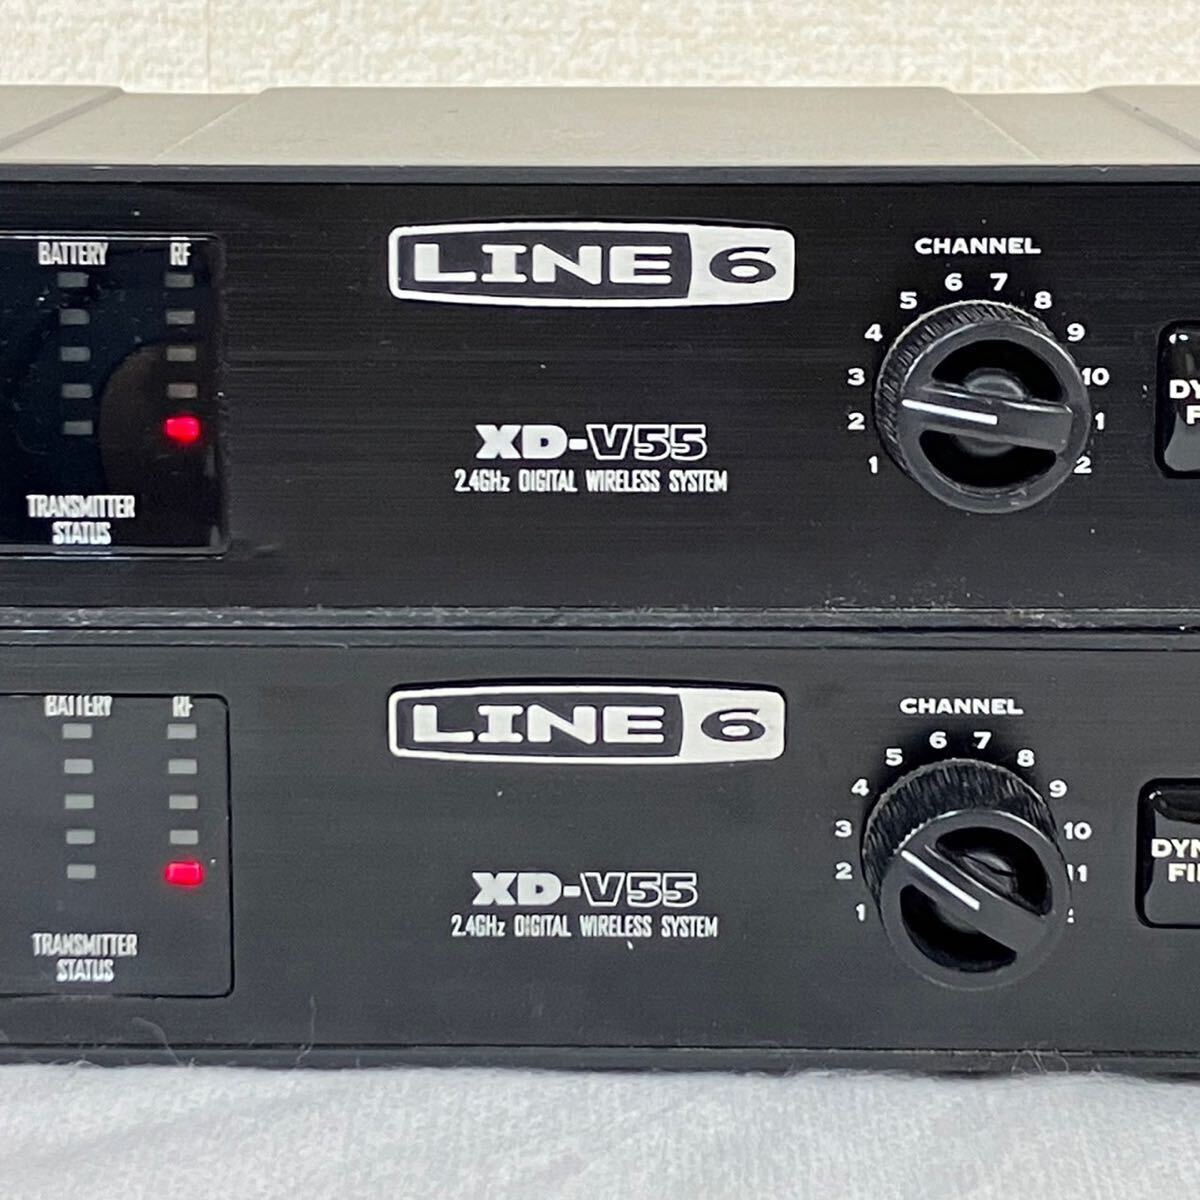 LINE6 ライン6 XD-V55 THH12 ワイヤレスマイク ワイヤレスシステム デジタルワイヤレスレシーバー マイク セット販売_画像4